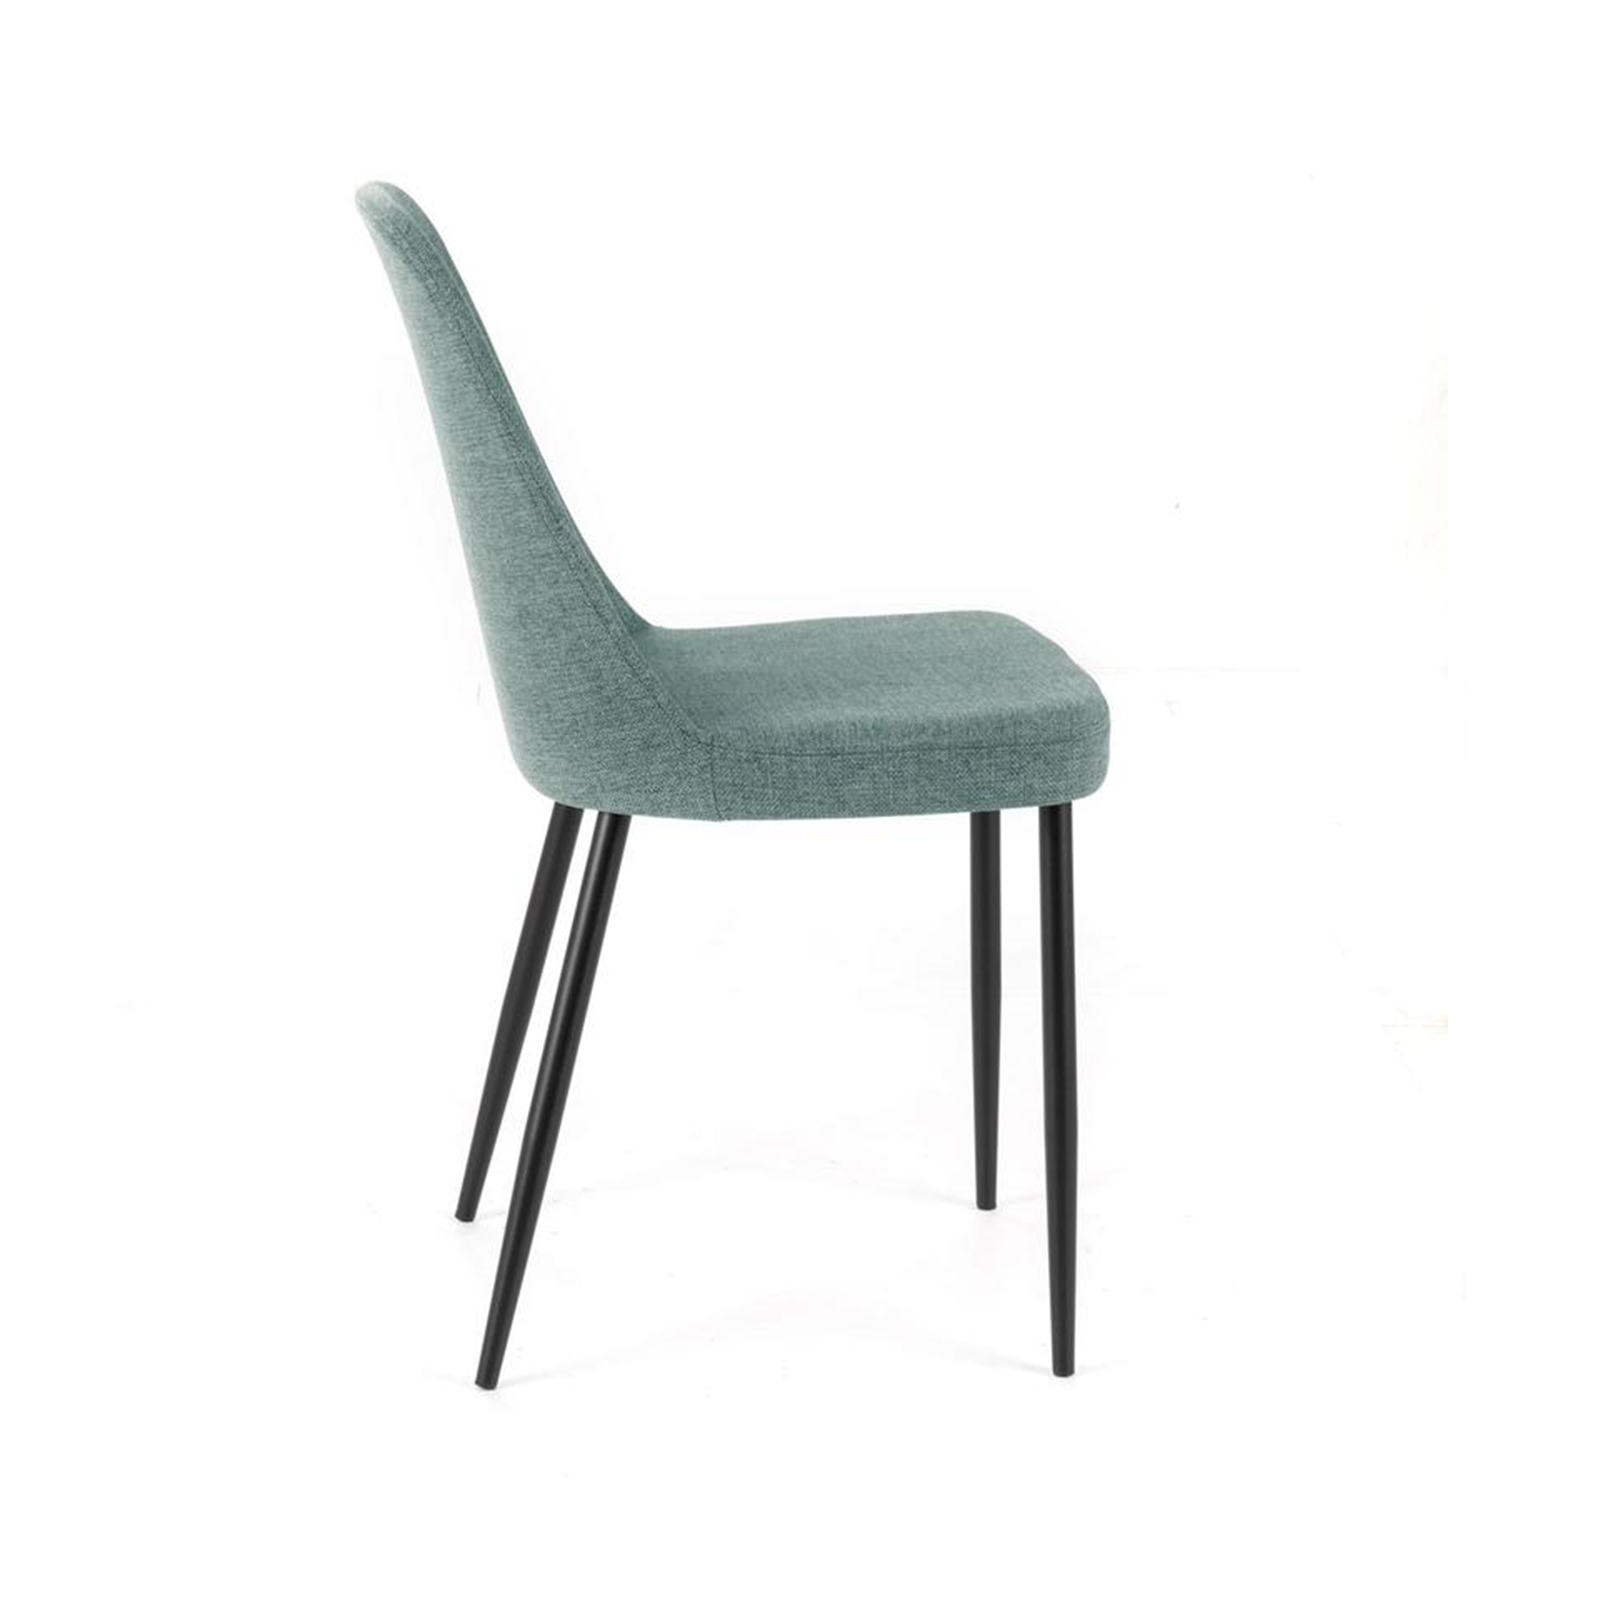 Set di sedie moderne in tessuto "Giglio" con gambe in metallo verniciato eleganti